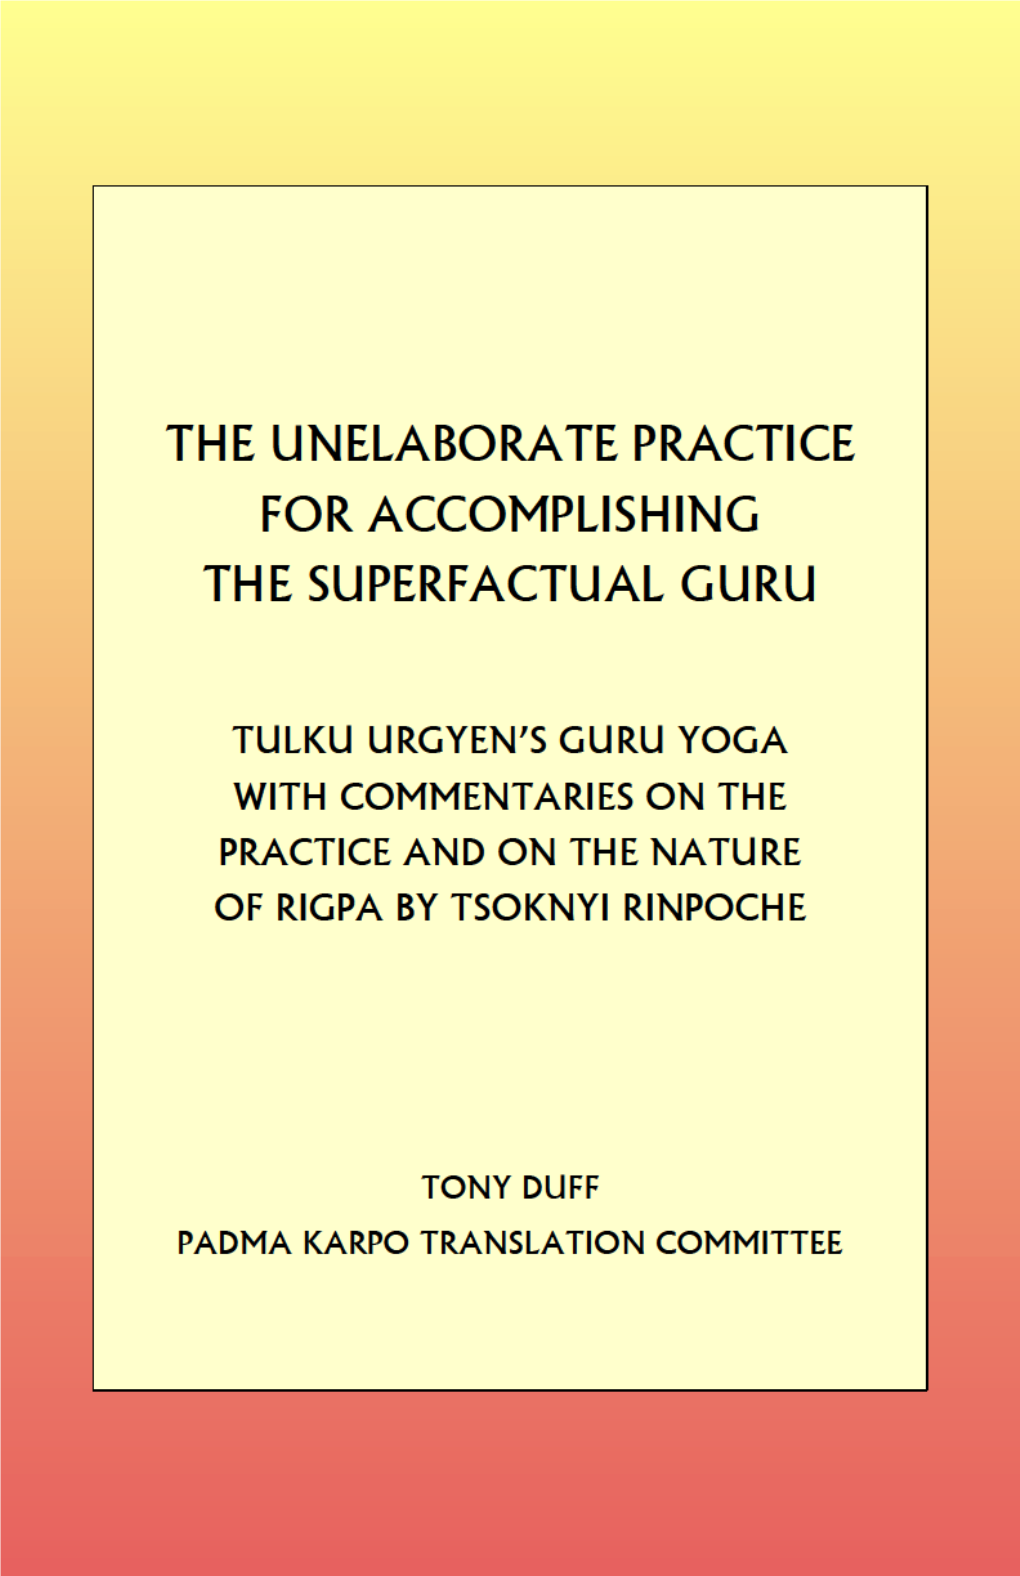 Tulku Urgen's Guru Yoga